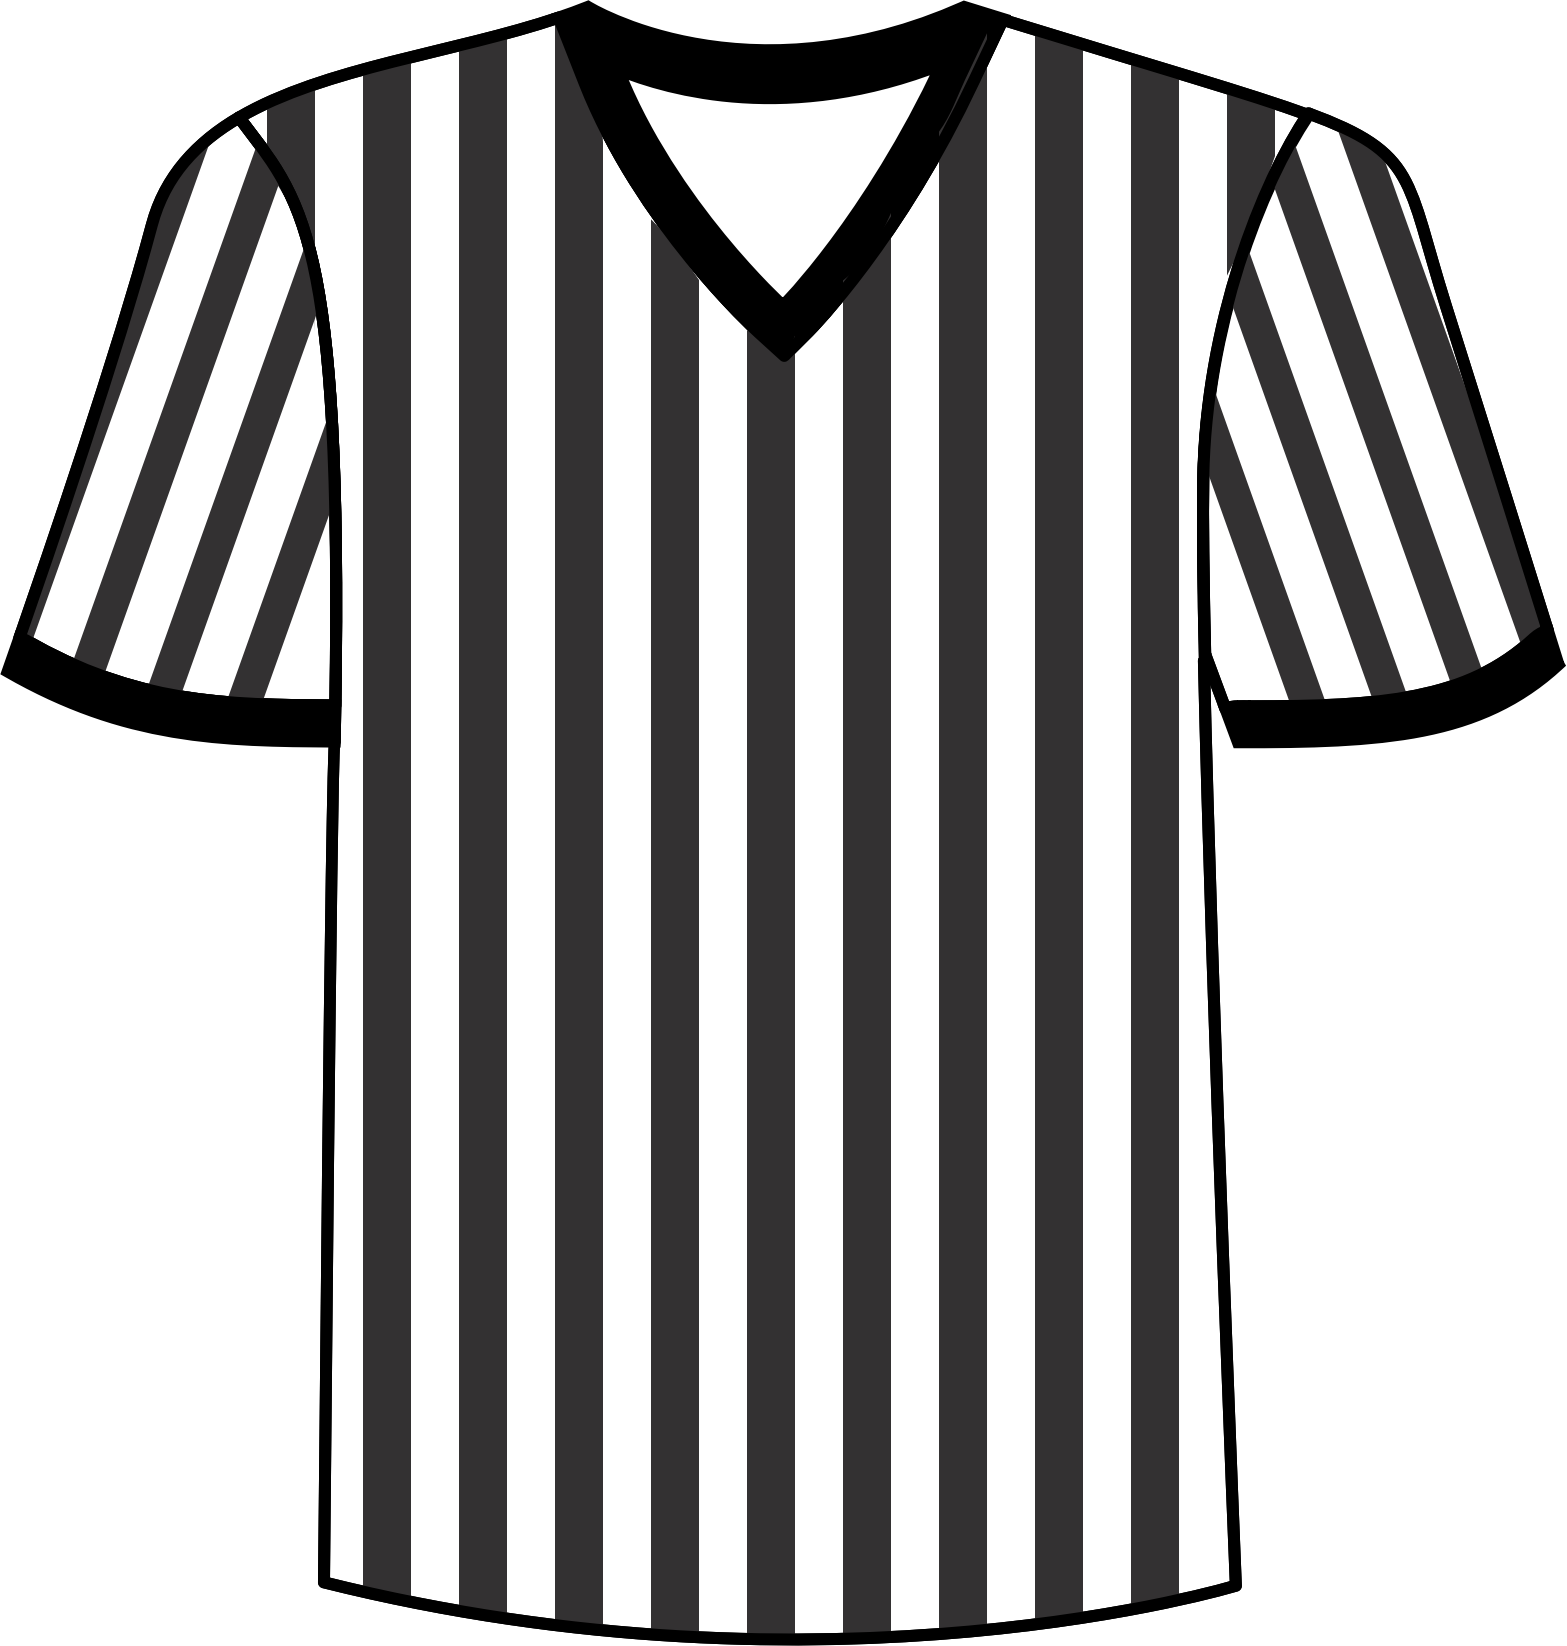 Shirts referee